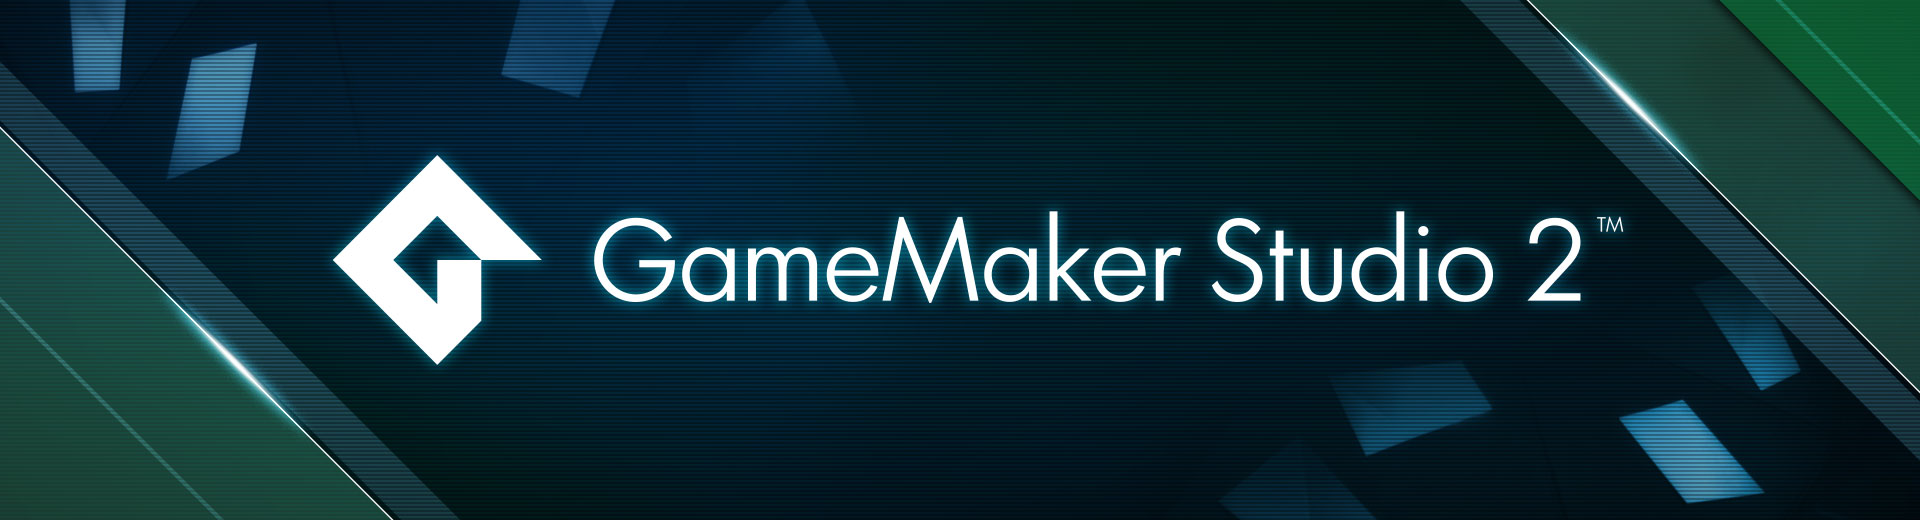 gamemaker studio 1.4 license gone